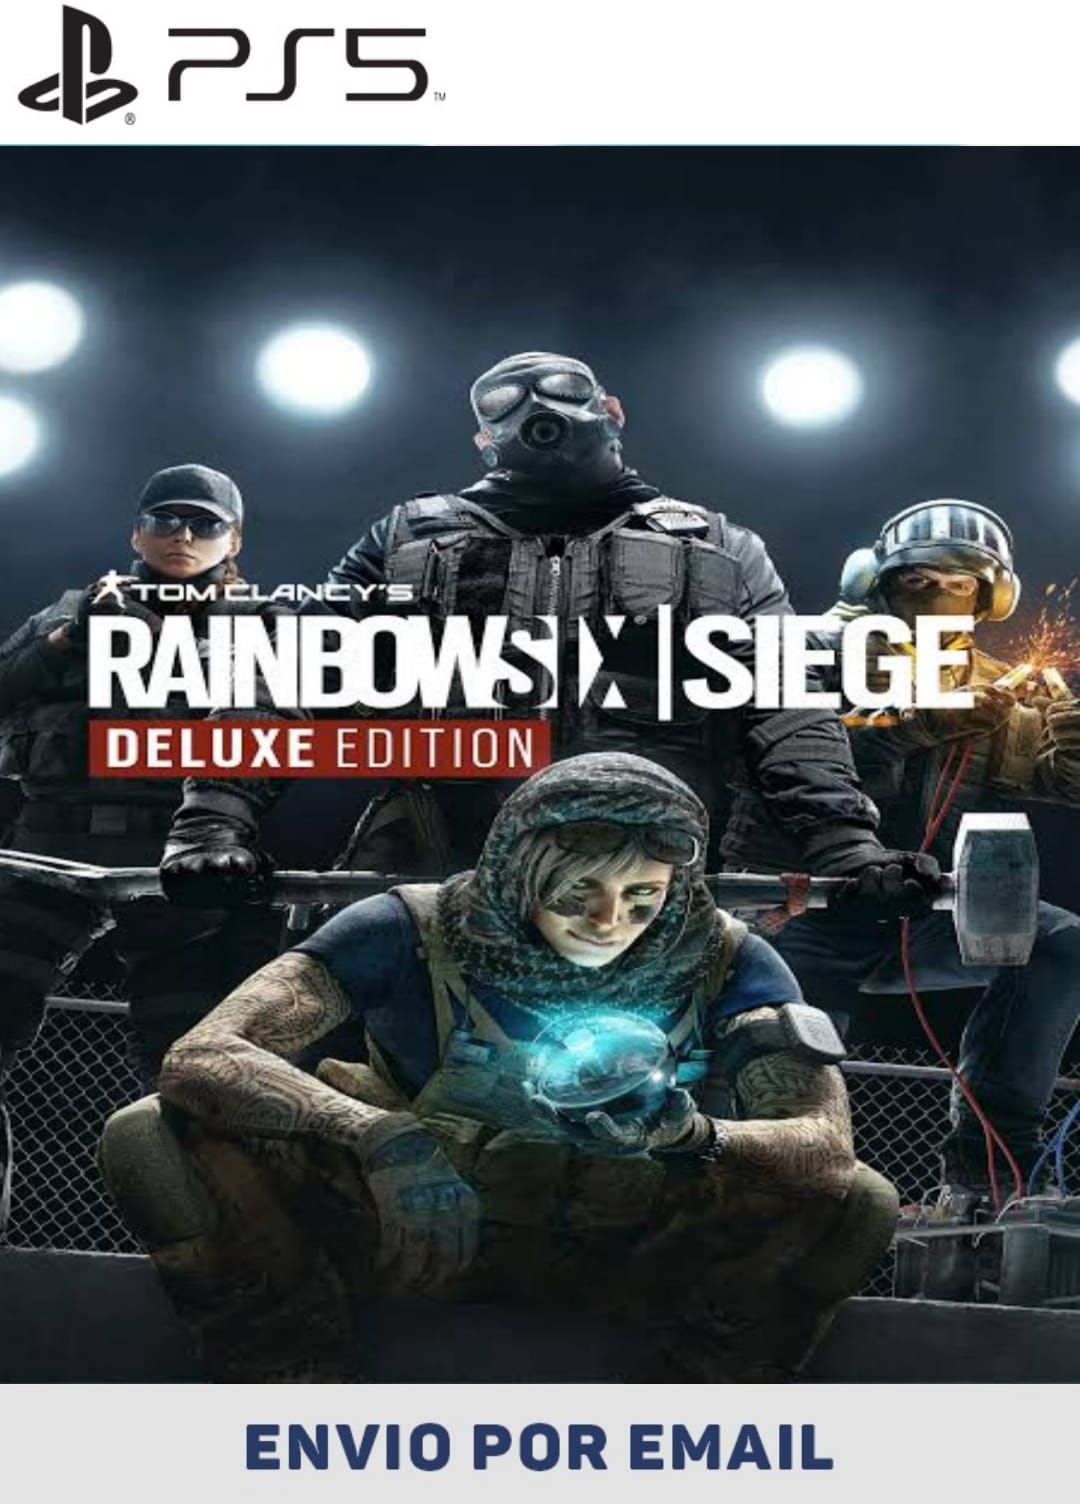 Franquia Rainbow Six Siege comemora 5 anos com lançamento e promoções